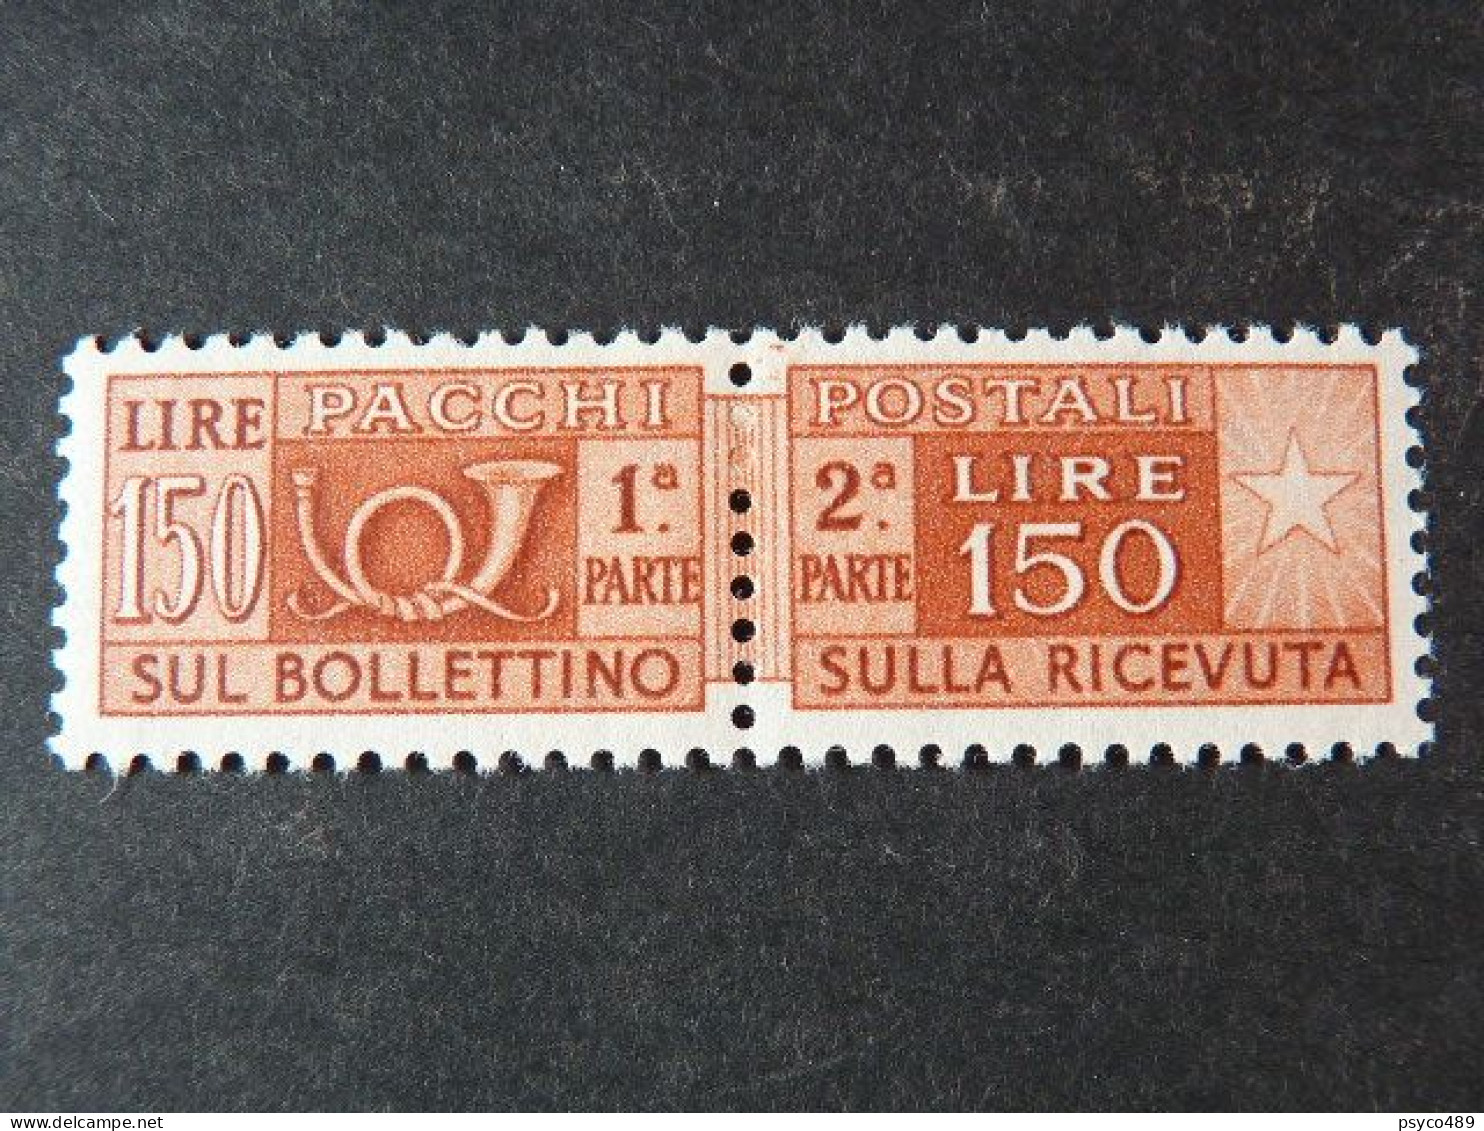 ITALIA Repubblica Pacchi -1955- "Corno Cifra" £. 150 Varietà Filigrana MNH** (descrizione) - Colis-postaux